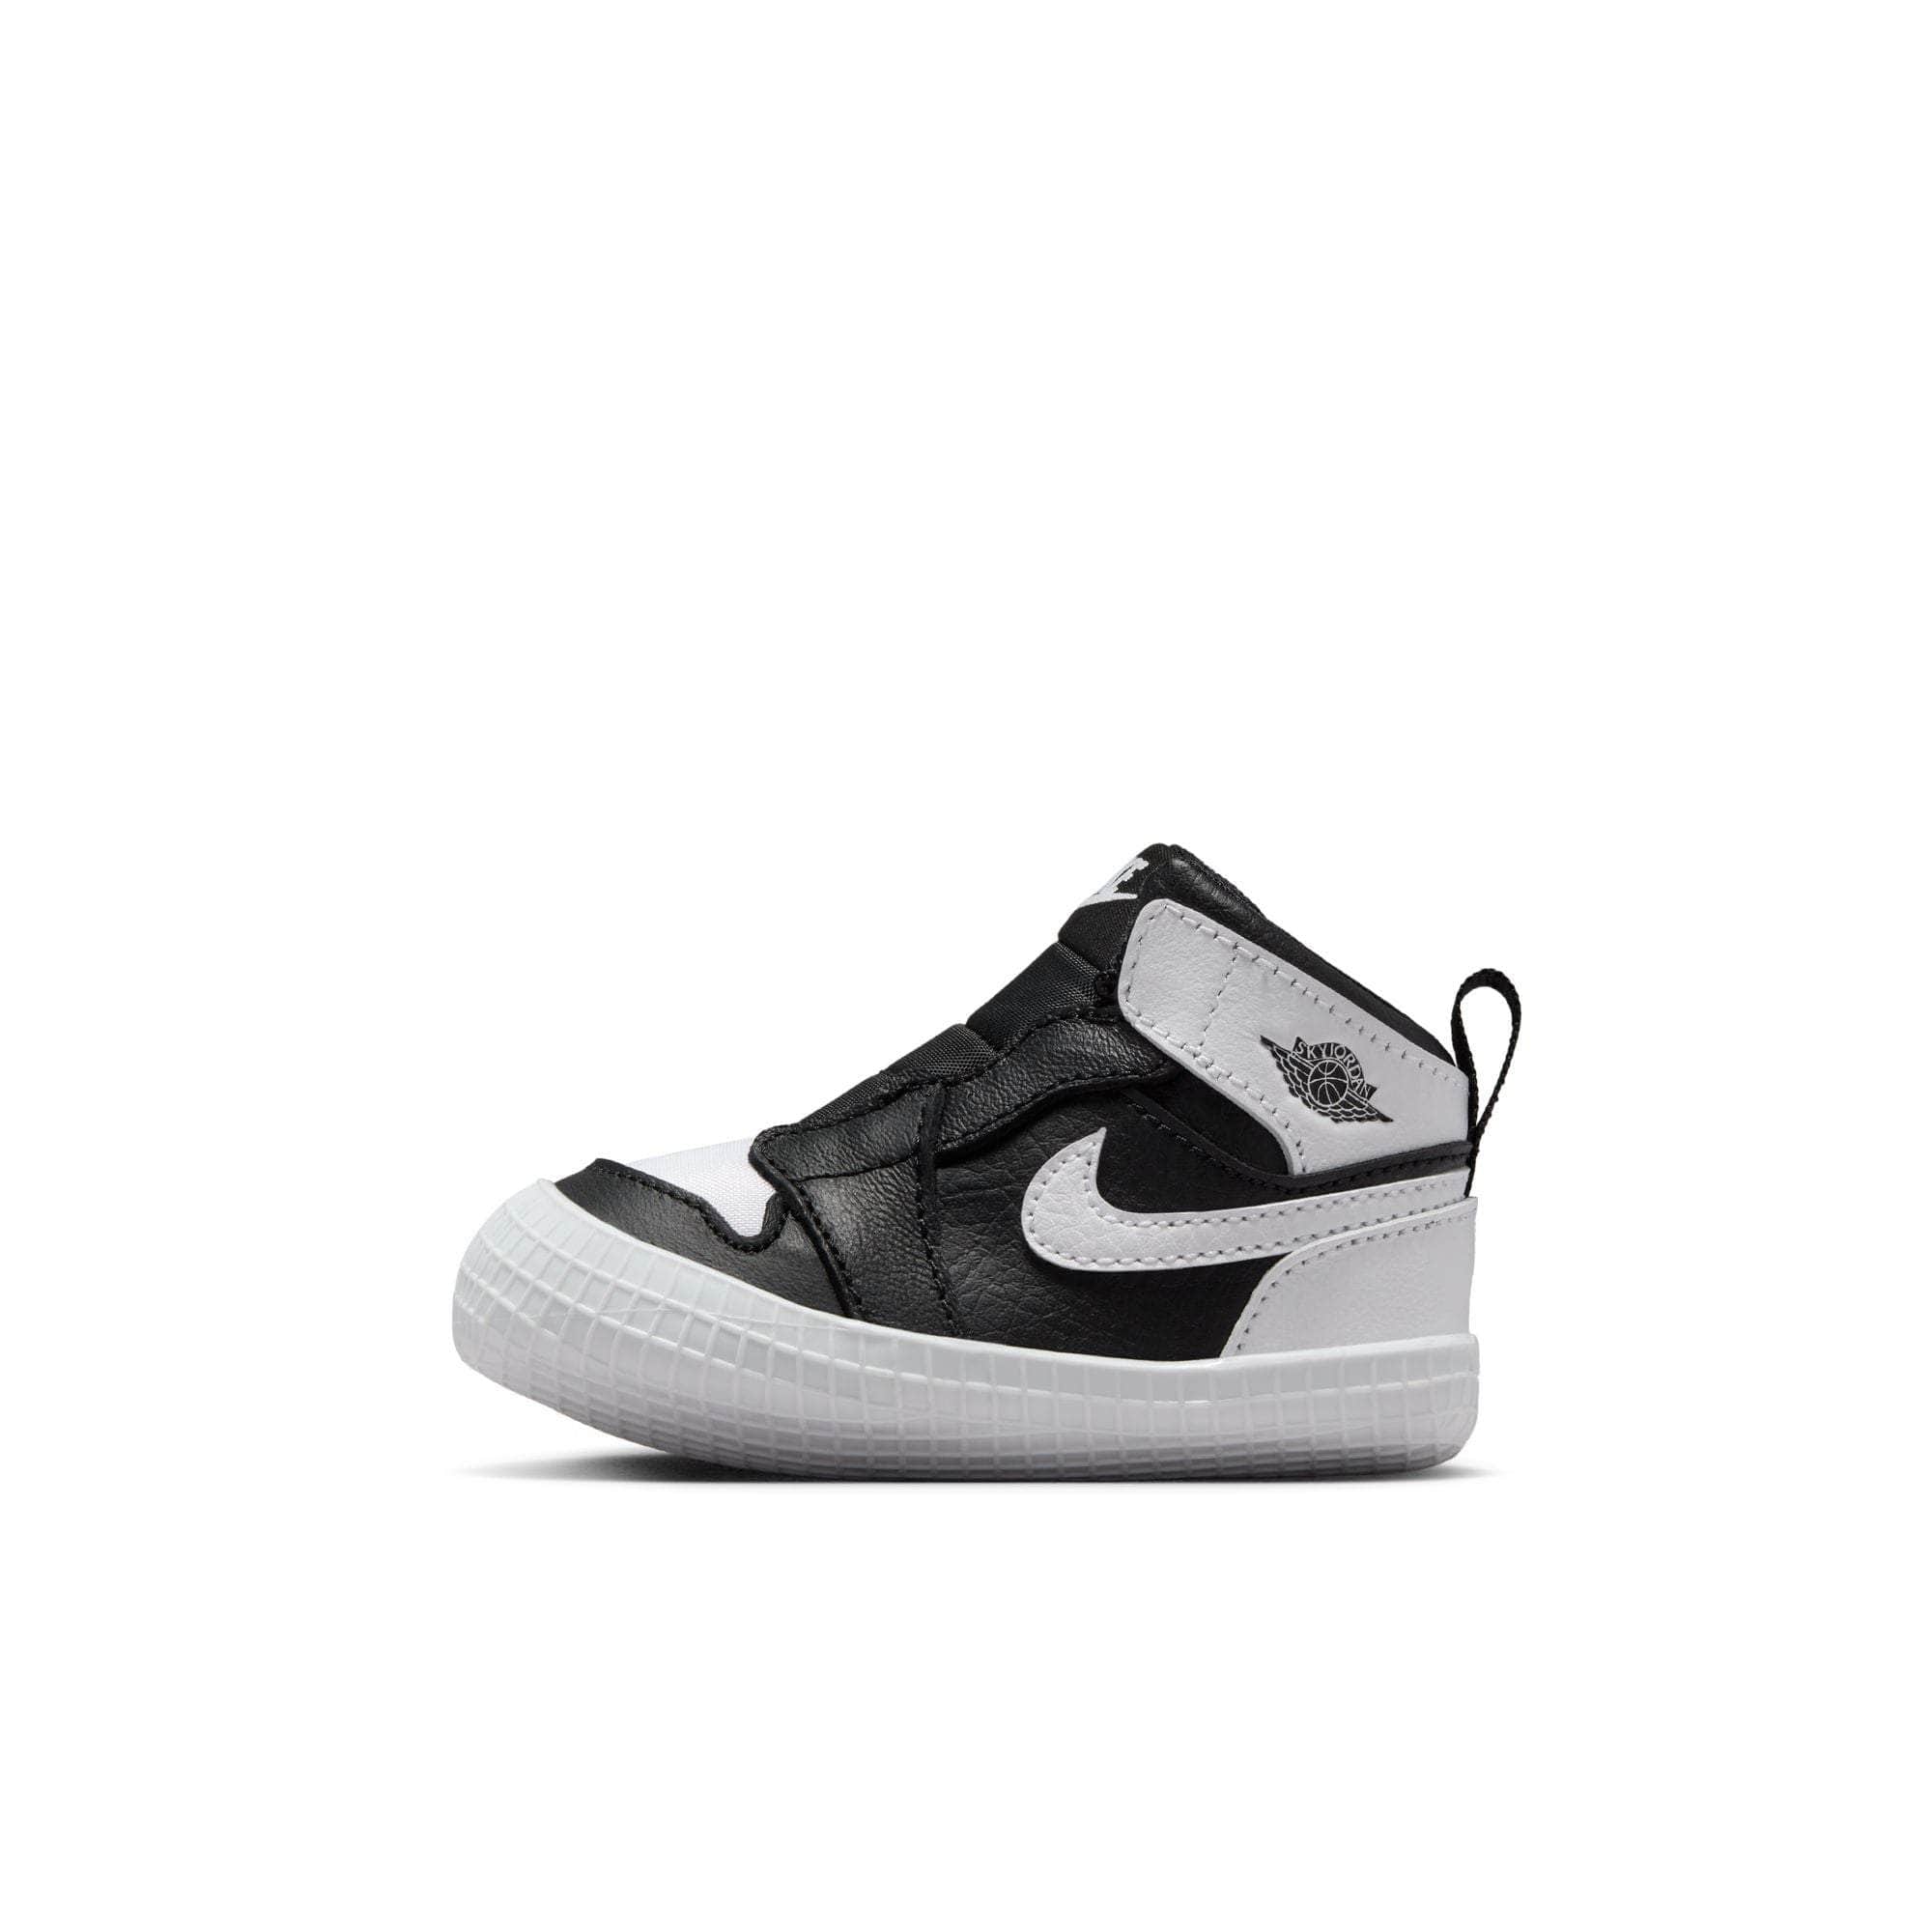 Air Jordan Footwear Air Jordan 1 Retro High OG "Reverse Panda" - Crib's